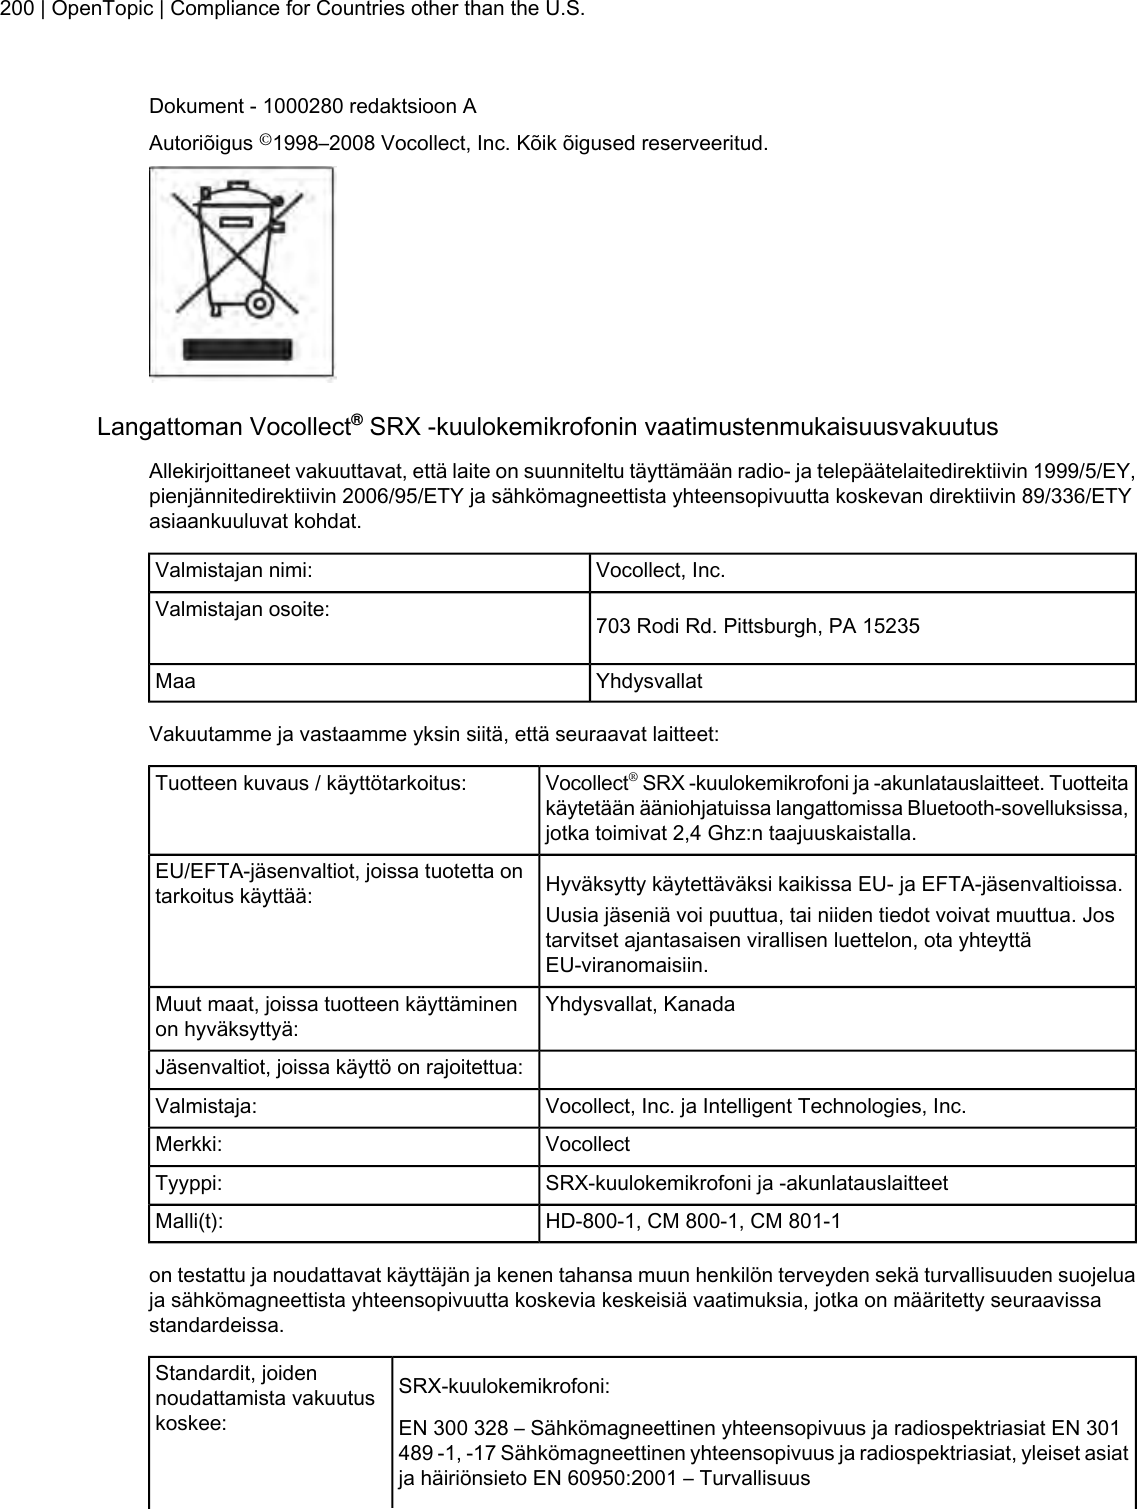 Dokument - 1000280 redaktsioon AAutoriõigus ©1998–2008 Vocollect, Inc. Kõik õigused reserveeritud.Langattoman Vocollect®SRX -kuulokemikrofonin vaatimustenmukaisuusvakuutusAllekirjoittaneet vakuuttavat, että laite on suunniteltu täyttämään radio- ja telepäätelaitedirektiivin 1999/5/EY,pienjännitedirektiivin 2006/95/ETY ja sähkömagneettista yhteensopivuutta koskevan direktiivin 89/336/ETYasiaankuuluvat kohdat.Vocollect, Inc.Valmistajan nimi:703 Rodi Rd. Pittsburgh, PA 15235Valmistajan osoite:YhdysvallatMaaVakuutamme ja vastaamme yksin siitä, että seuraavat laitteet:Vocollect®SRX -kuulokemikrofoni ja -akunlatauslaitteet. Tuotteitakäytetään ääniohjatuissa langattomissa Bluetooth-sovelluksissa,jotka toimivat 2,4 Ghz:n taajuuskaistalla.Tuotteen kuvaus / käyttötarkoitus:Hyväksytty käytettäväksi kaikissa EU- ja EFTA-jäsenvaltioissa.EU/EFTA-jäsenvaltiot, joissa tuotetta ontarkoitus käyttää: Uusia jäseniä voi puuttua, tai niiden tiedot voivat muuttua. Jostarvitset ajantasaisen virallisen luettelon, ota yhteyttäEU-viranomaisiin.Yhdysvallat, KanadaMuut maat, joissa tuotteen käyttäminenon hyväksyttyä:Jäsenvaltiot, joissa käyttö on rajoitettua:Vocollect, Inc. ja Intelligent Technologies, Inc.Valmistaja:VocollectMerkki:SRX-kuulokemikrofoni ja -akunlatauslaitteetTyyppi:HD-800-1, CM 800-1, CM 801-1Malli(t):on testattu ja noudattavat käyttäjän ja kenen tahansa muun henkilön terveyden sekä turvallisuuden suojeluaja sähkömagneettista yhteensopivuutta koskevia keskeisiä vaatimuksia, jotka on määritetty seuraavissastandardeissa.SRX-kuulokemikrofoni:Standardit, joidennoudattamista vakuutuskoskee: EN 300 328 – Sähkömagneettinen yhteensopivuus ja radiospektriasiat EN 301489 -1, -17 Sähkömagneettinen yhteensopivuus ja radiospektriasiat, yleiset asiatja häiriönsieto EN 60950:2001 – Turvallisuus200 | OpenTopic | Compliance for Countries other than the U.S.